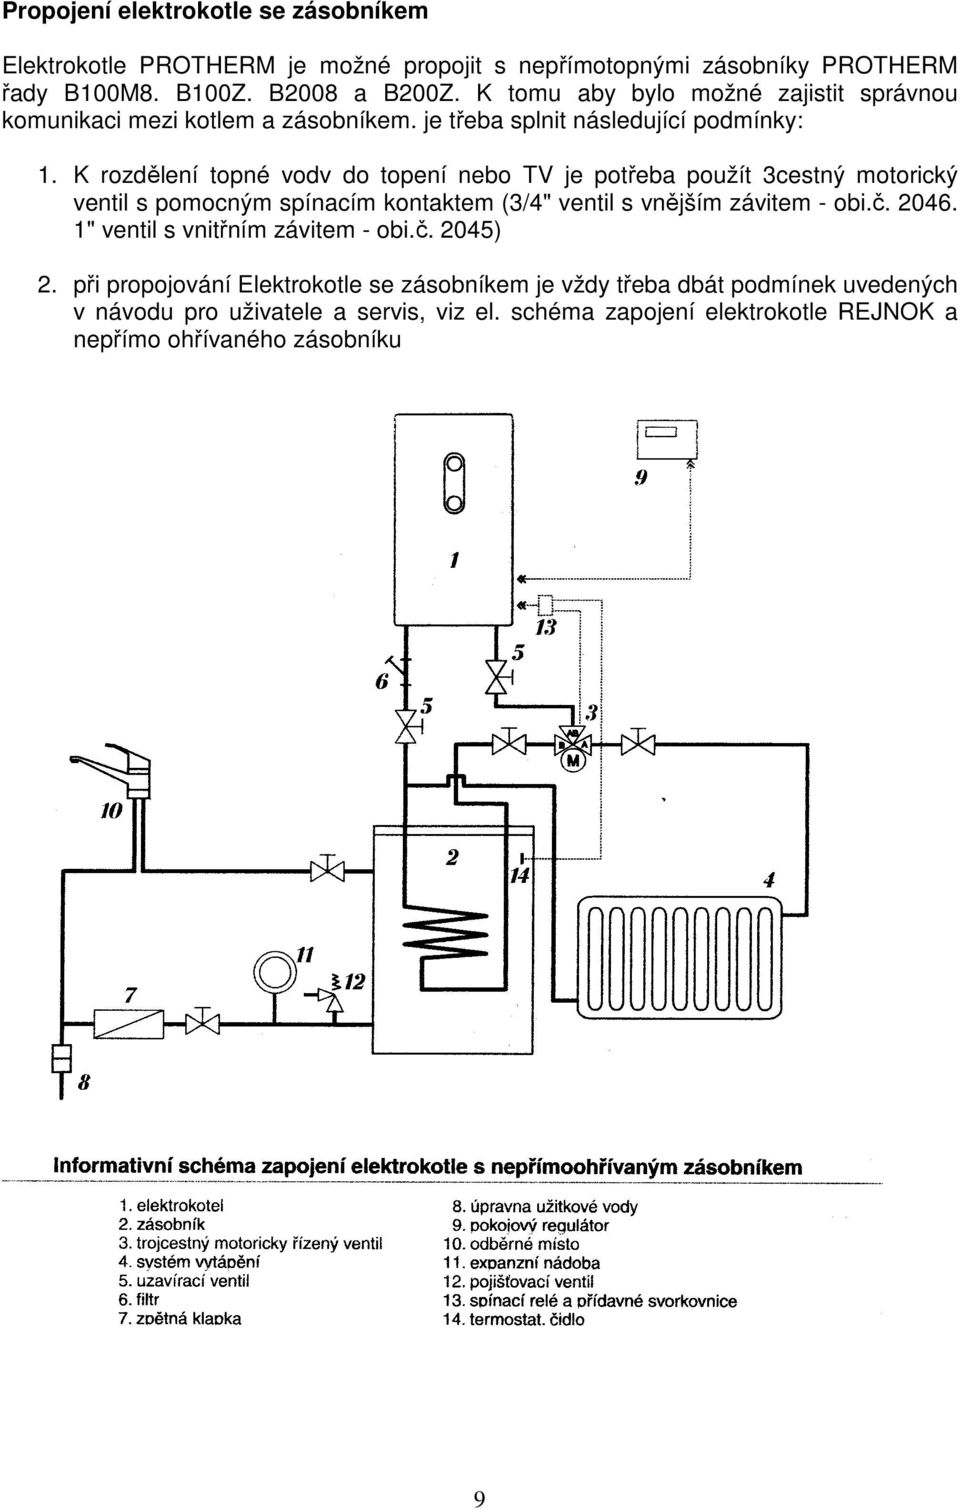 K rozdělení topné vodv do topení nebo TV je potřeba použít 3cestný motorický ventil s pomocným spínacím kontaktem (3/4" ventil s vnějším závitem - obi.č. 2046.